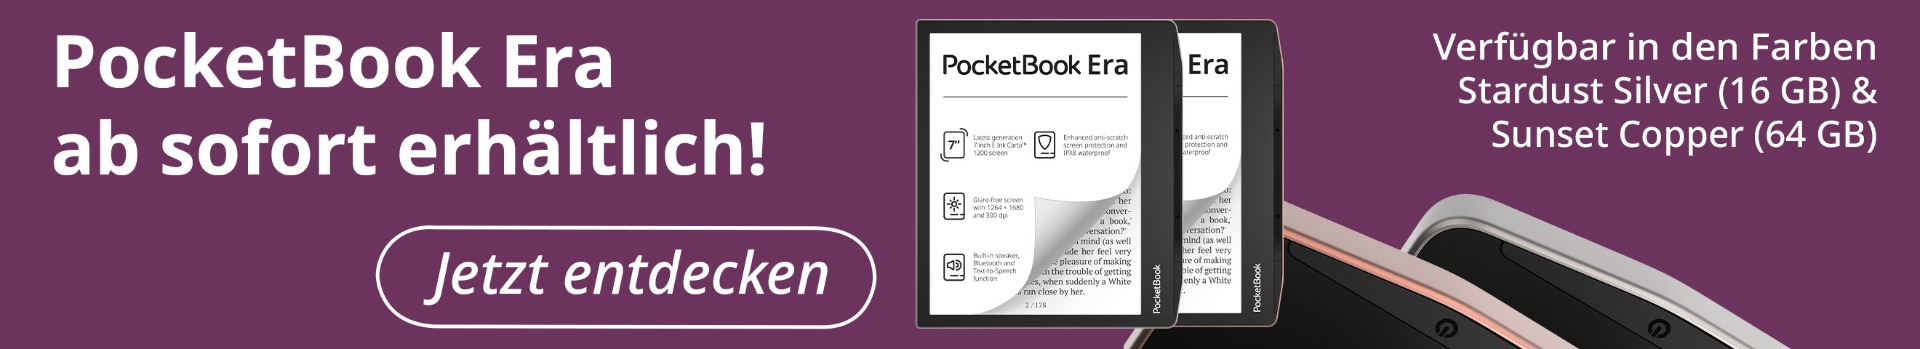 PocketBook Era Kombi-Angebot